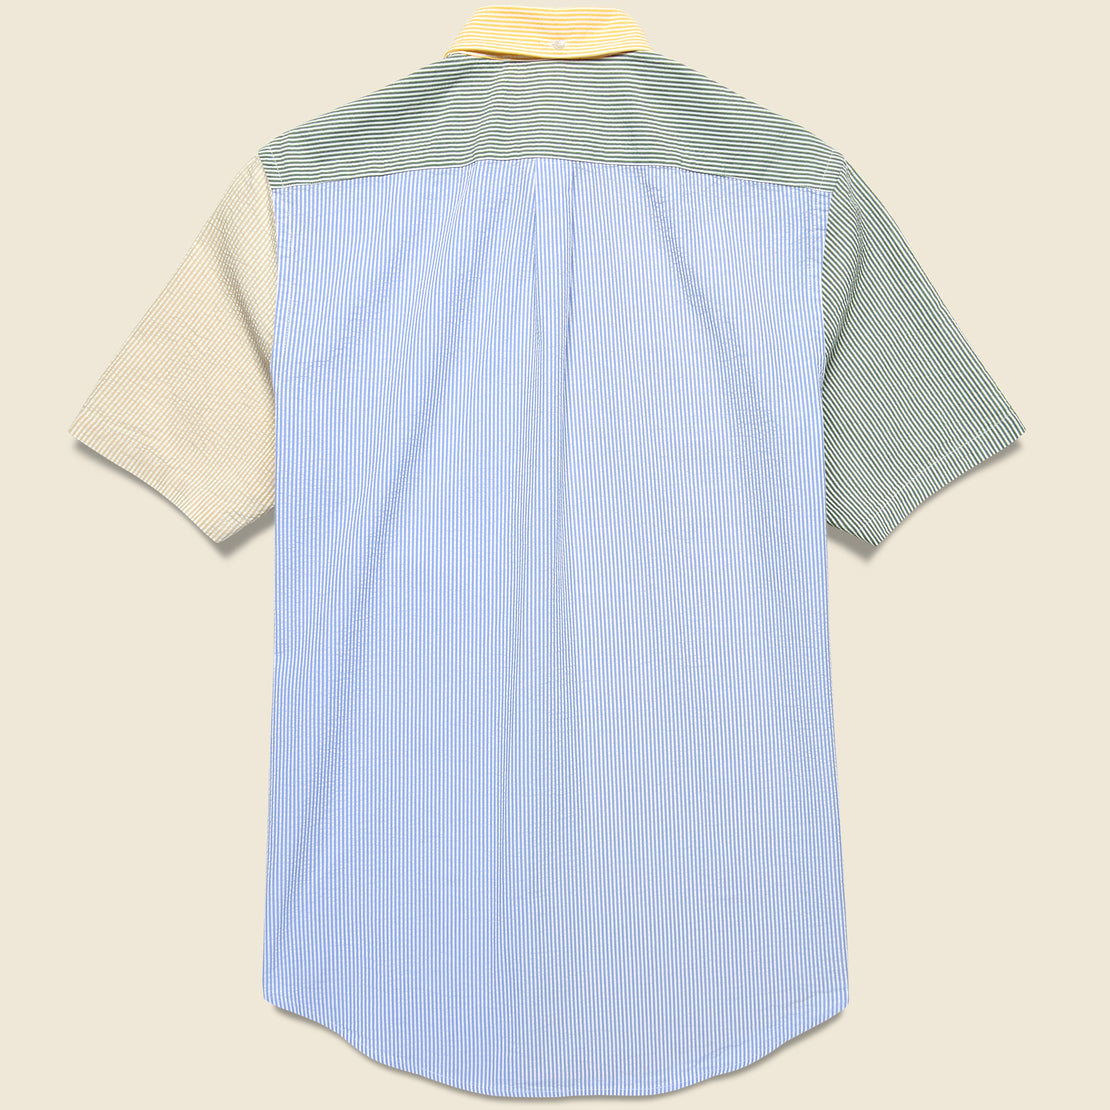 Atlantico Seersucker Shirt - Patchwork - Portuguese Flannel - STAG Provisions - Tops - S/S Woven - Seersucker